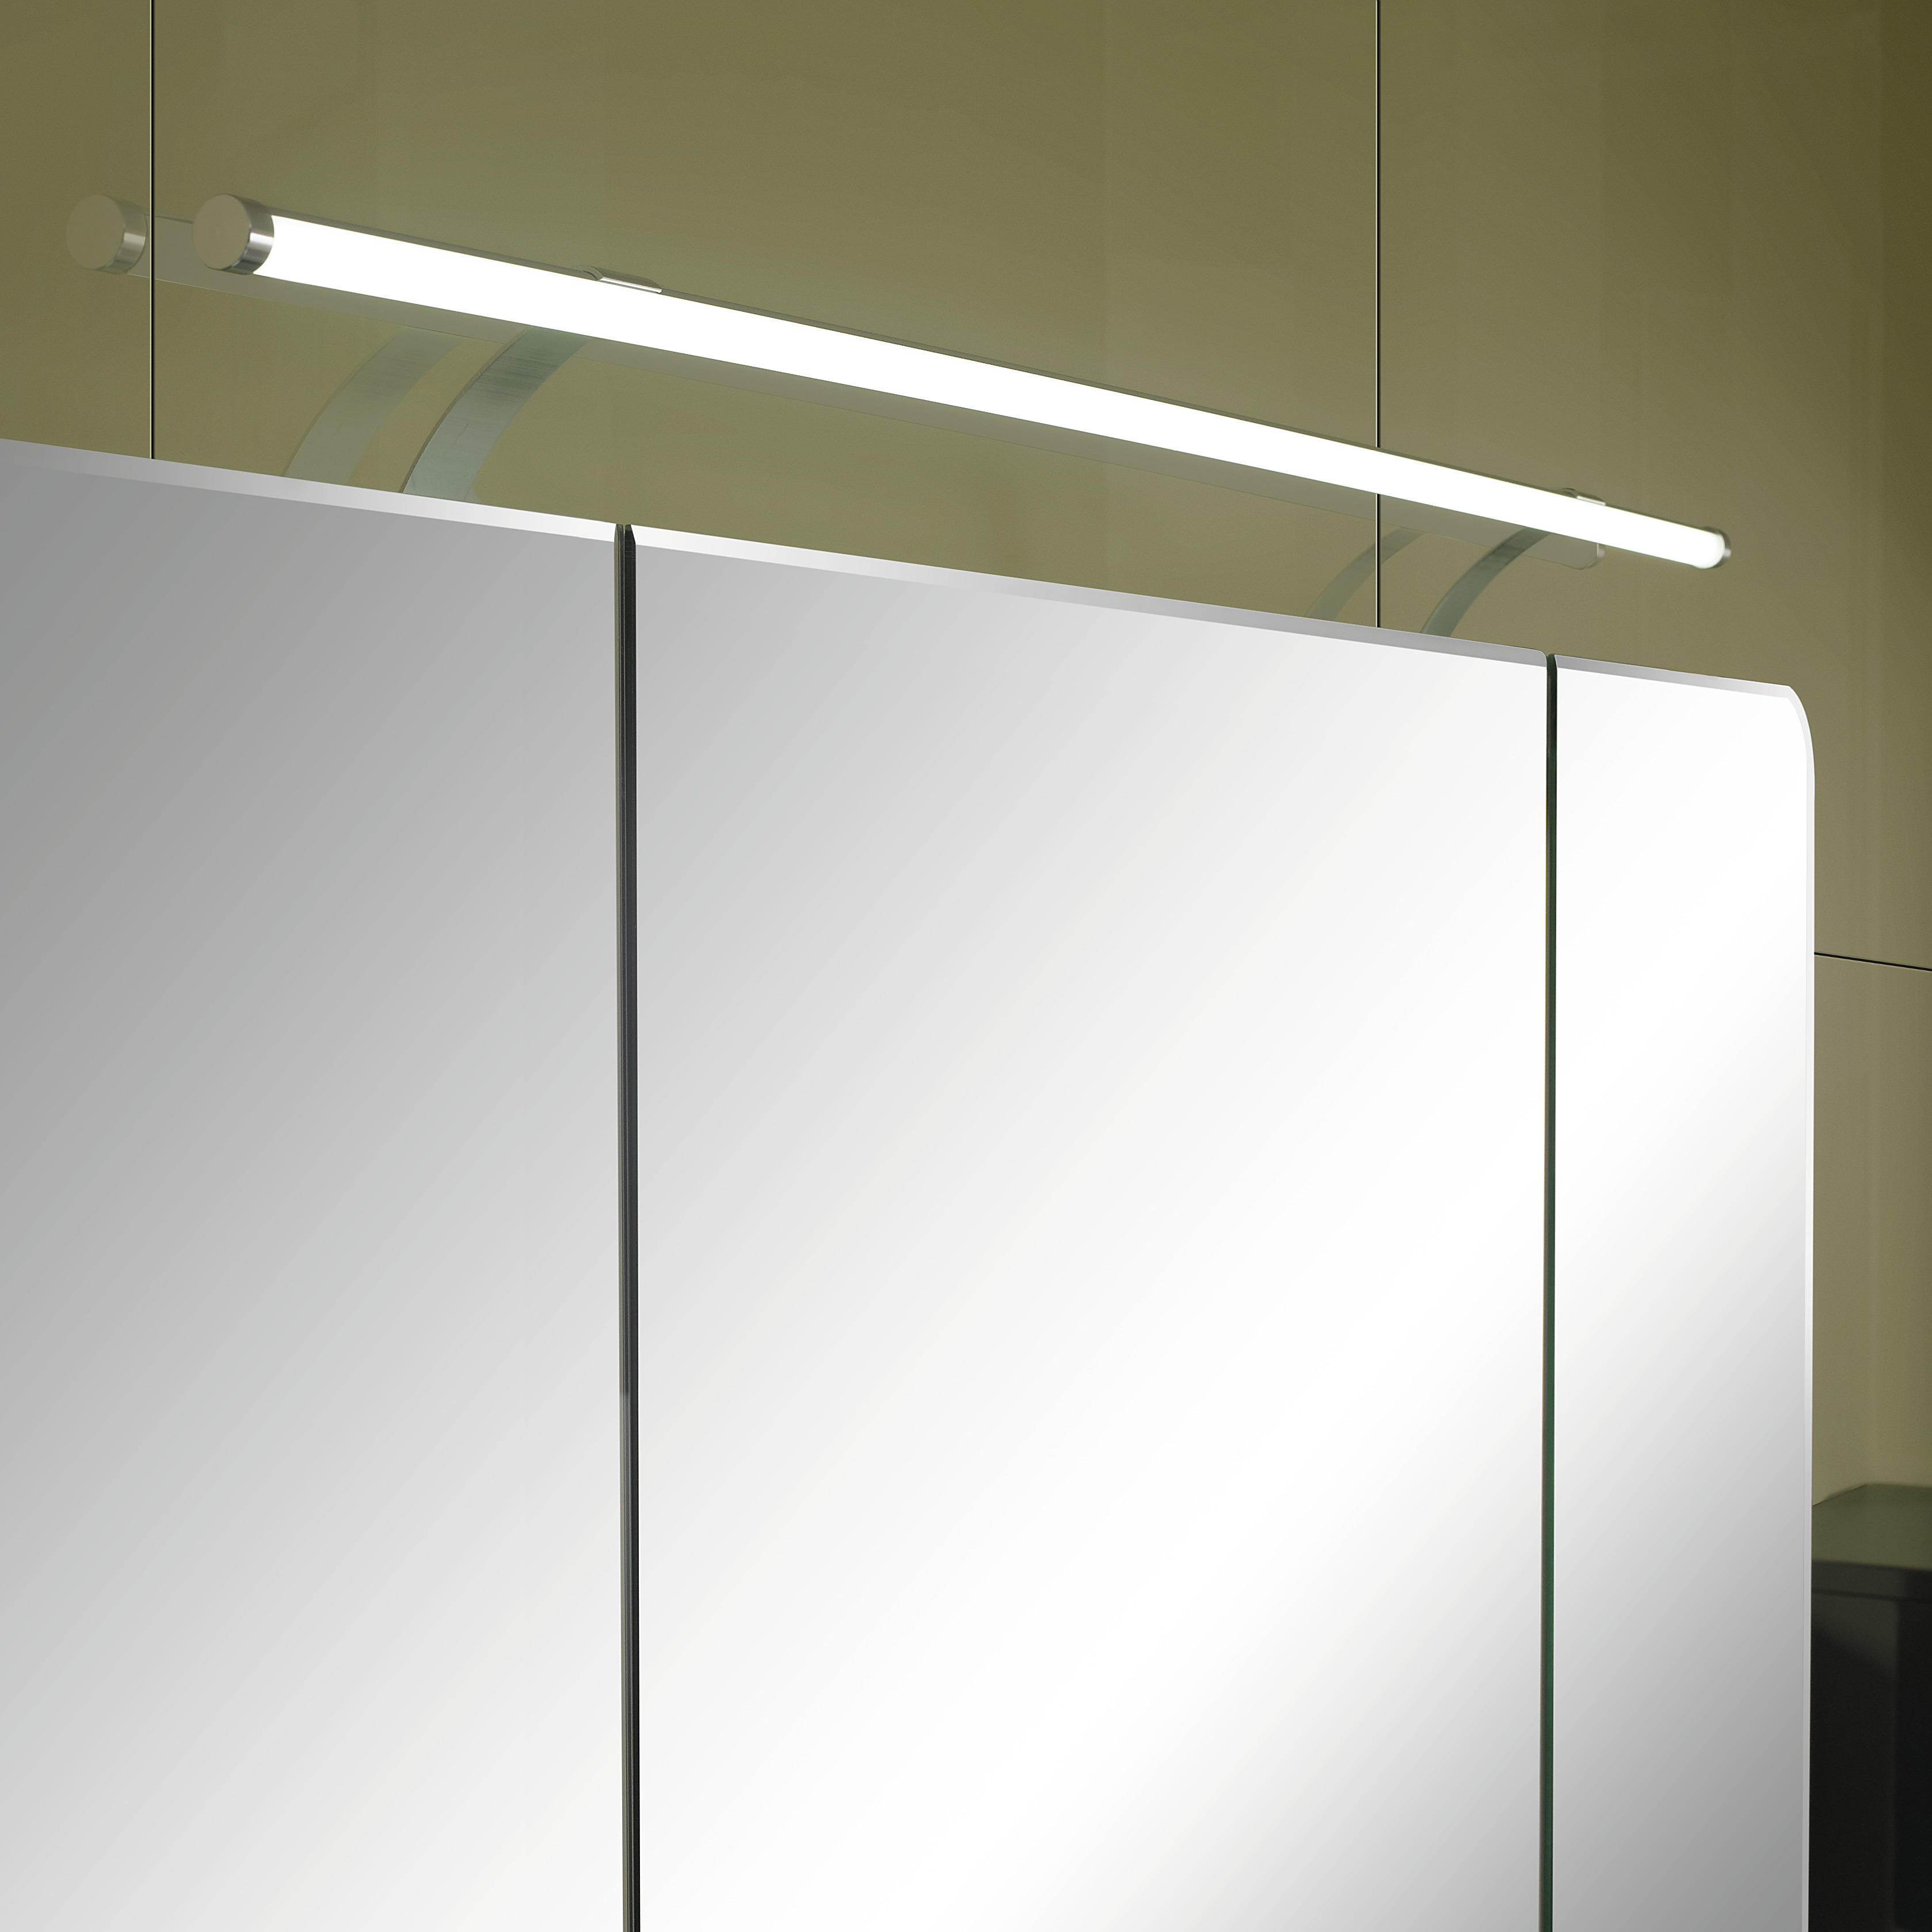 KÚPEĽŇA, sivá, 120 cm - sivá, Design, kompozitné drevo/sklo (120cm) - Sadena